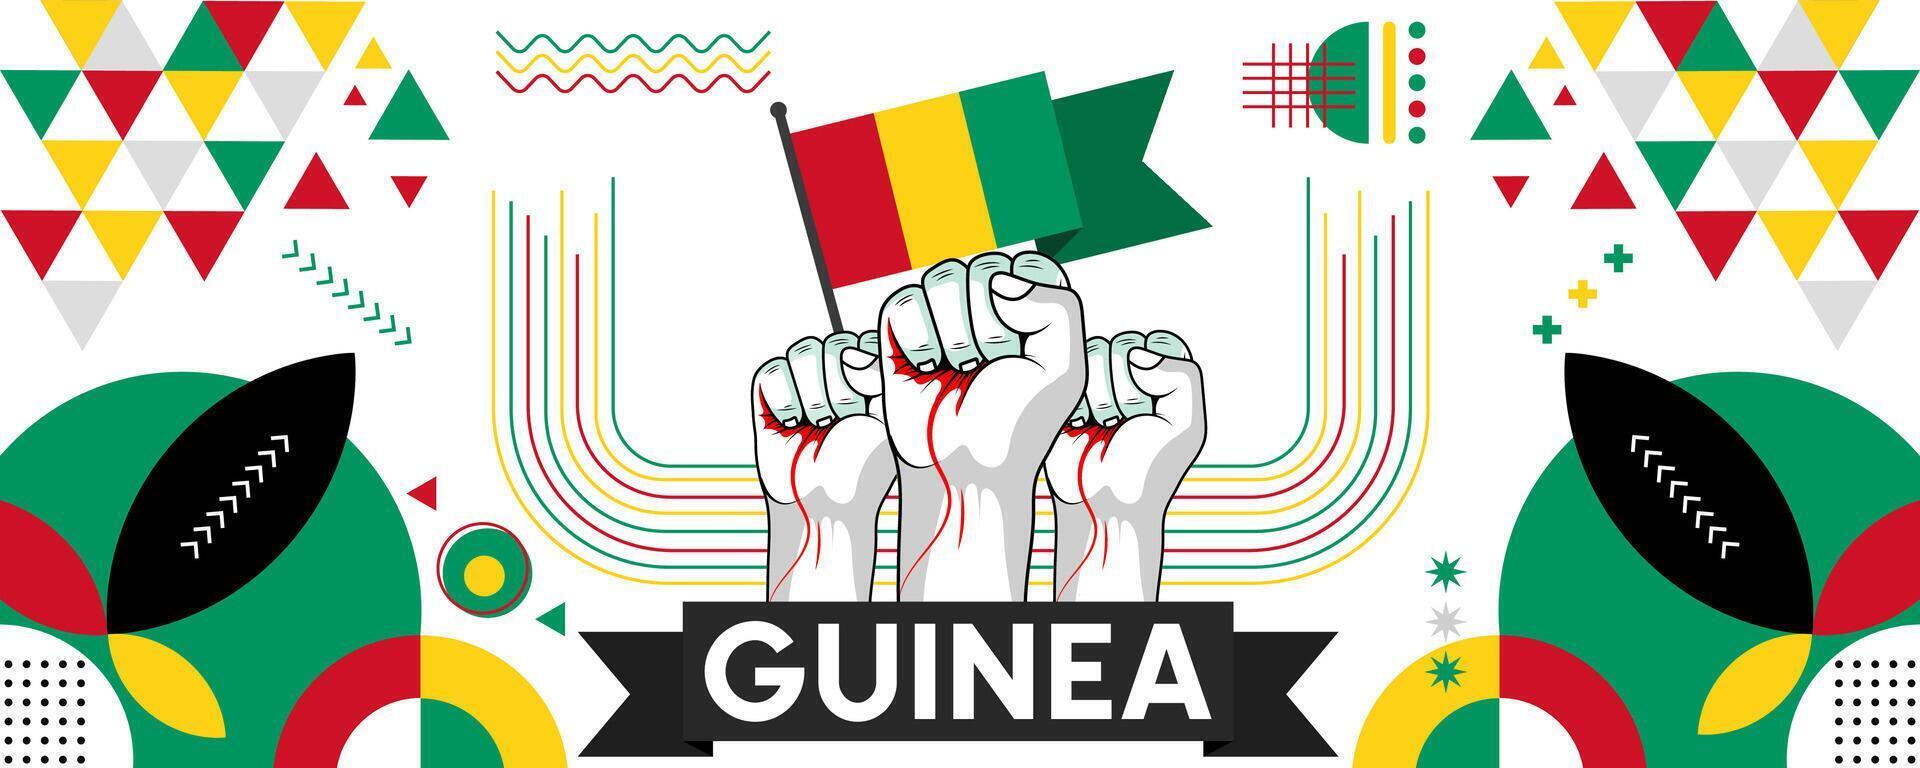 Guinea National oder Unabhängigkeit Tag Banner zum Land Feier. Flagge von Guinea mit angehoben Fäuste. modern retro Design mit Typorgaphie abstrakt geometrisch Symbole. Vektor Illustration.